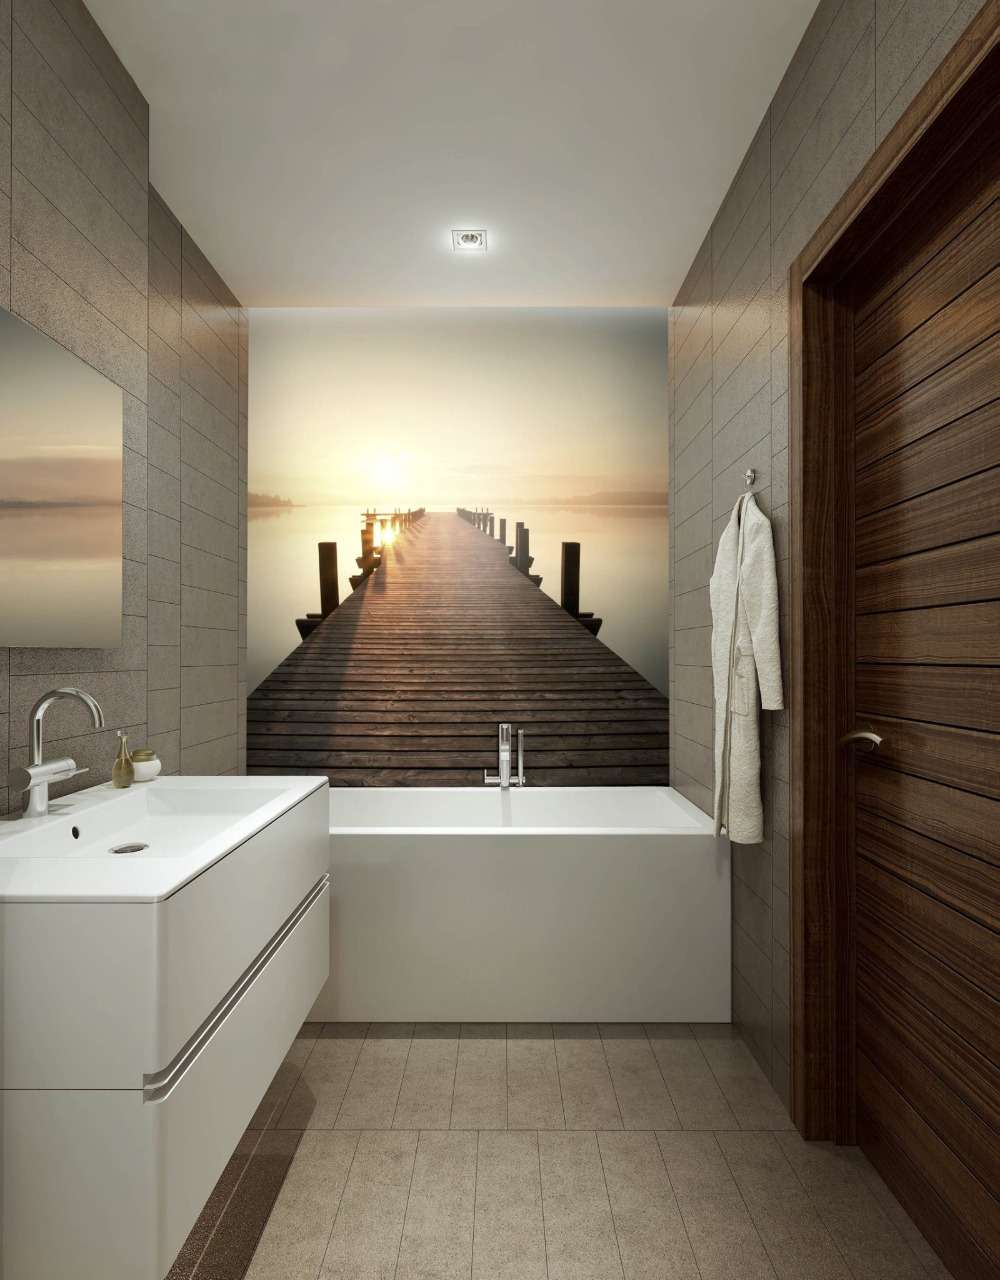 Papel de parede fotográfico sobre a banheira em um banheiro rústico com design moderno